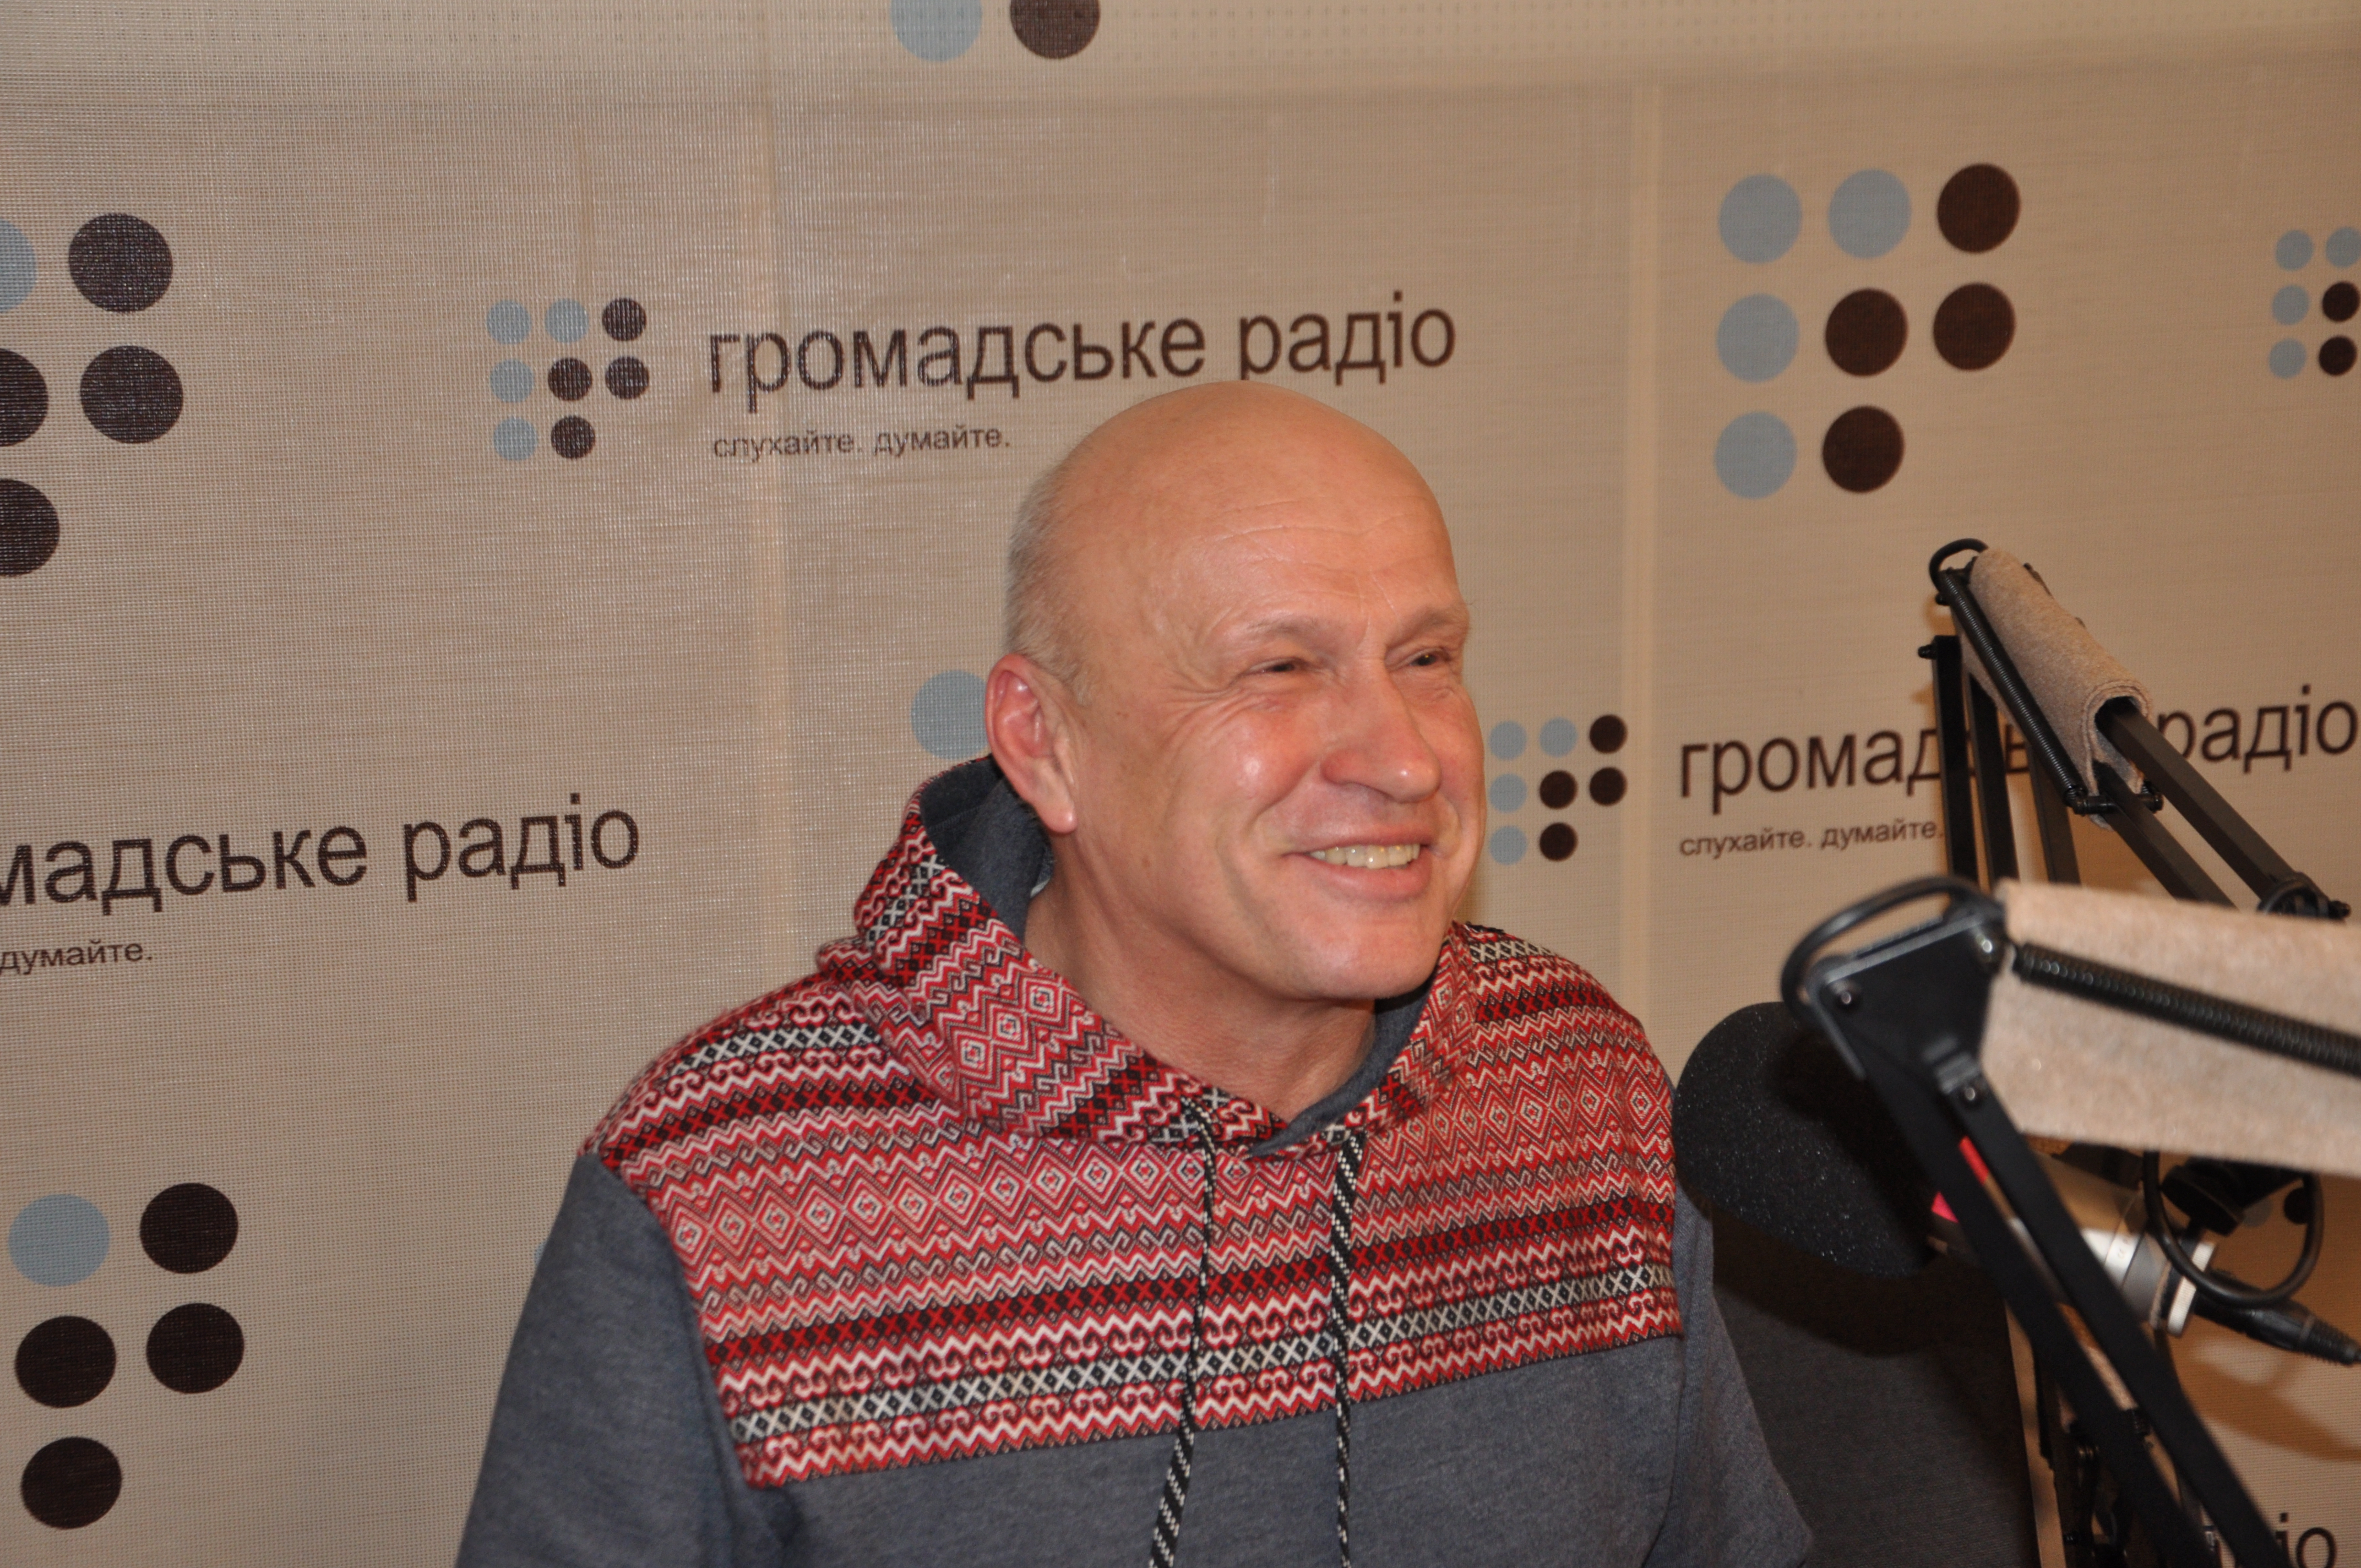 «Через 2 года, в Украины есть шанс перезагрузиться», – Олег Рыбачук